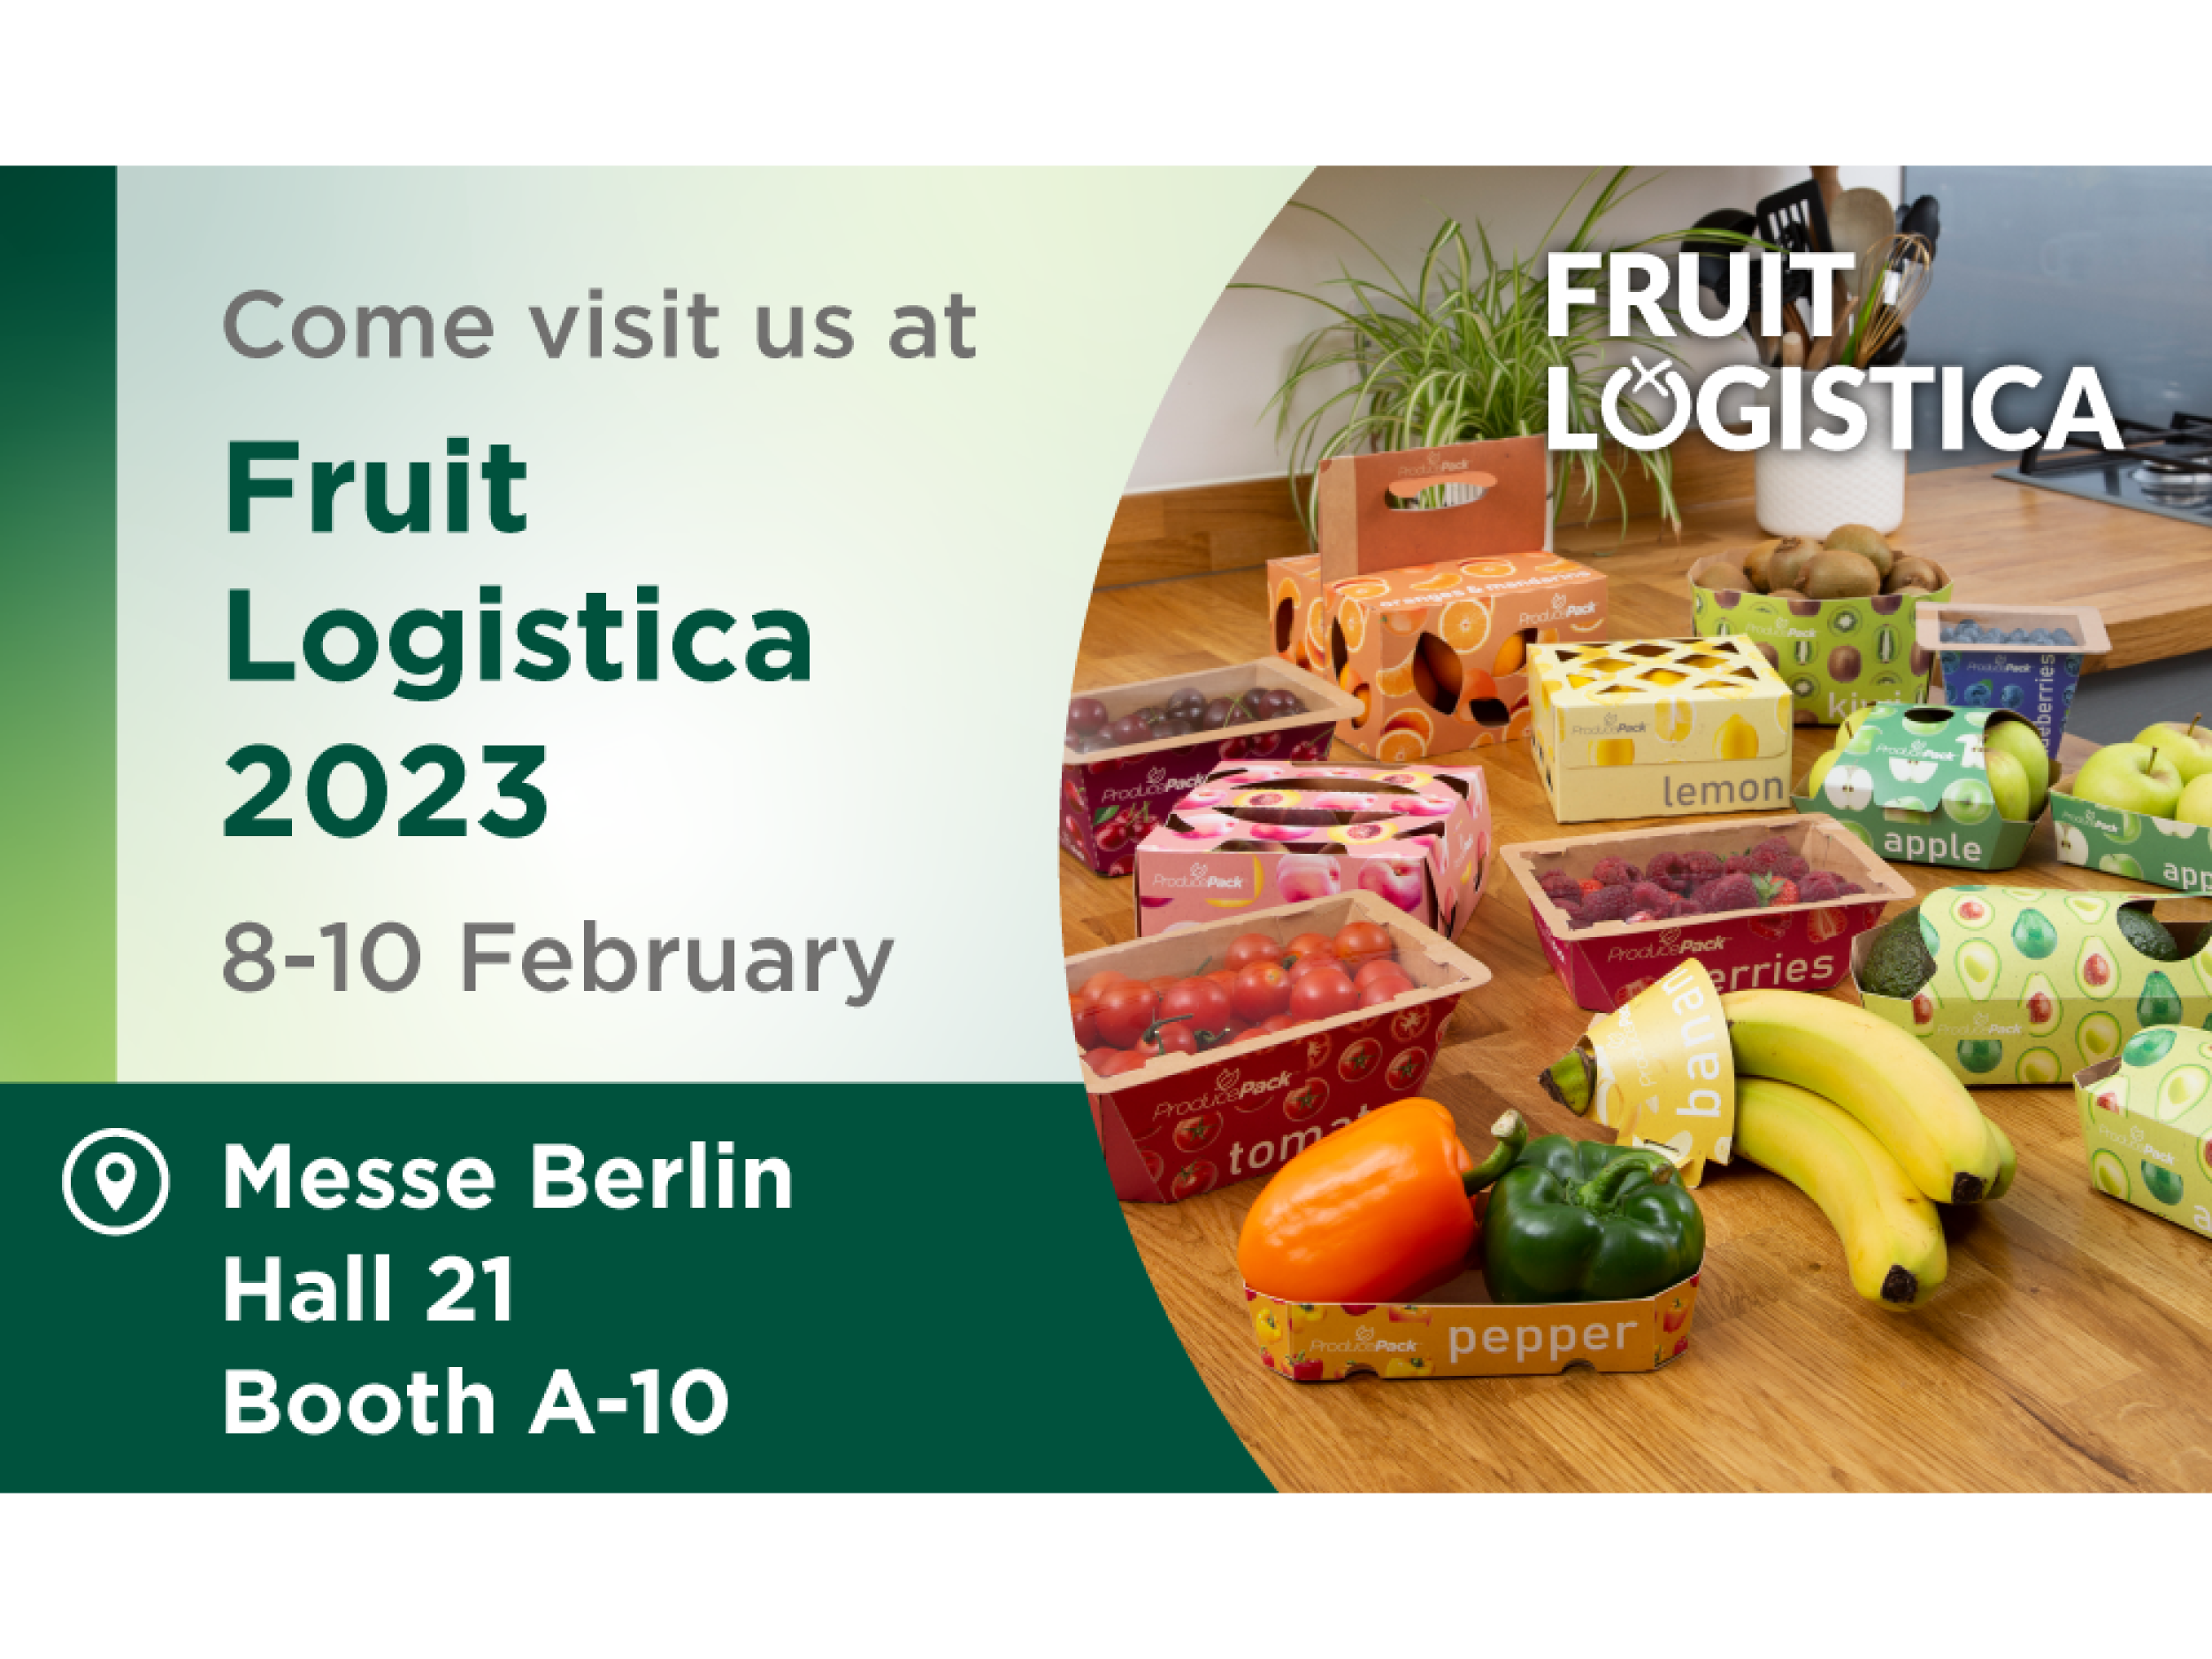 Venez voir Graphic Packaging International au Fruit Logistica 2023 et découvrez notre gamme complète d’emballages de produits frais.